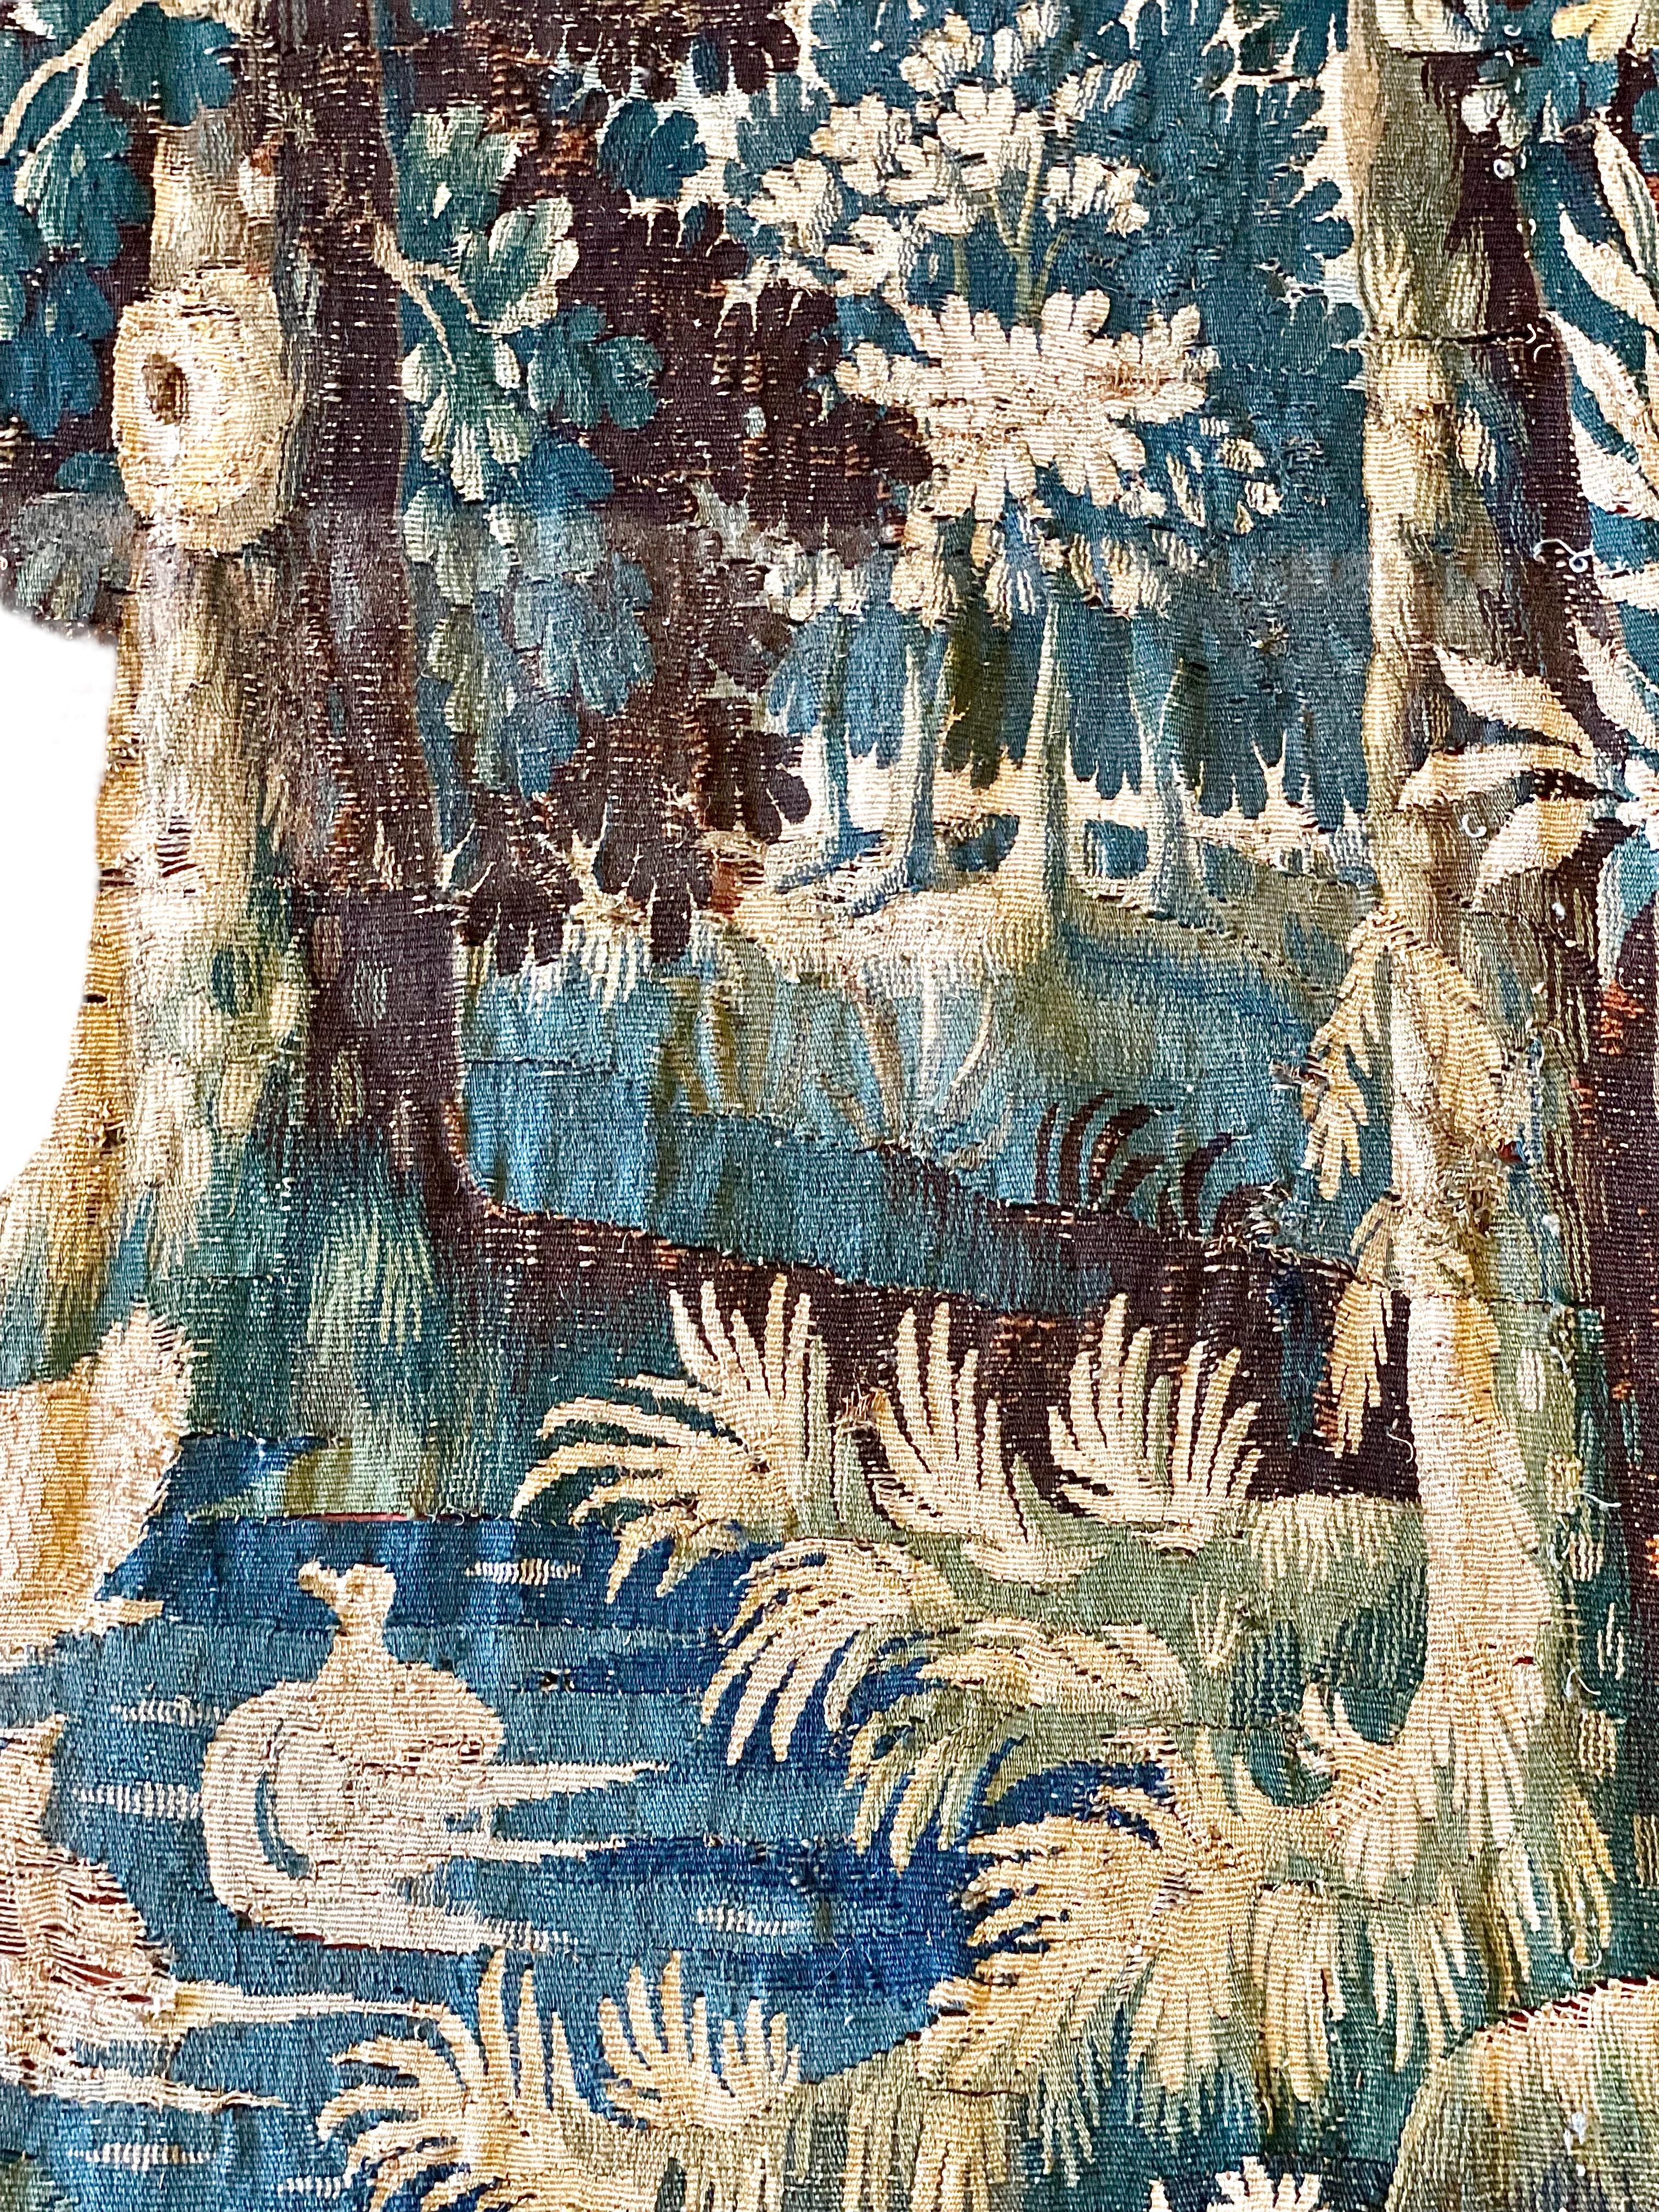 Ein luxuriöser Aubusson-Wandteppich aus dem 18. Jahrhundert, der einen Hund zeigt, der Hühner an einem Fluss anbellt, in einer typisch ländlichen und architektonischen Landschaft. Dieser antike Wandbehang aus handgewebter Wolle in überwiegend grünen